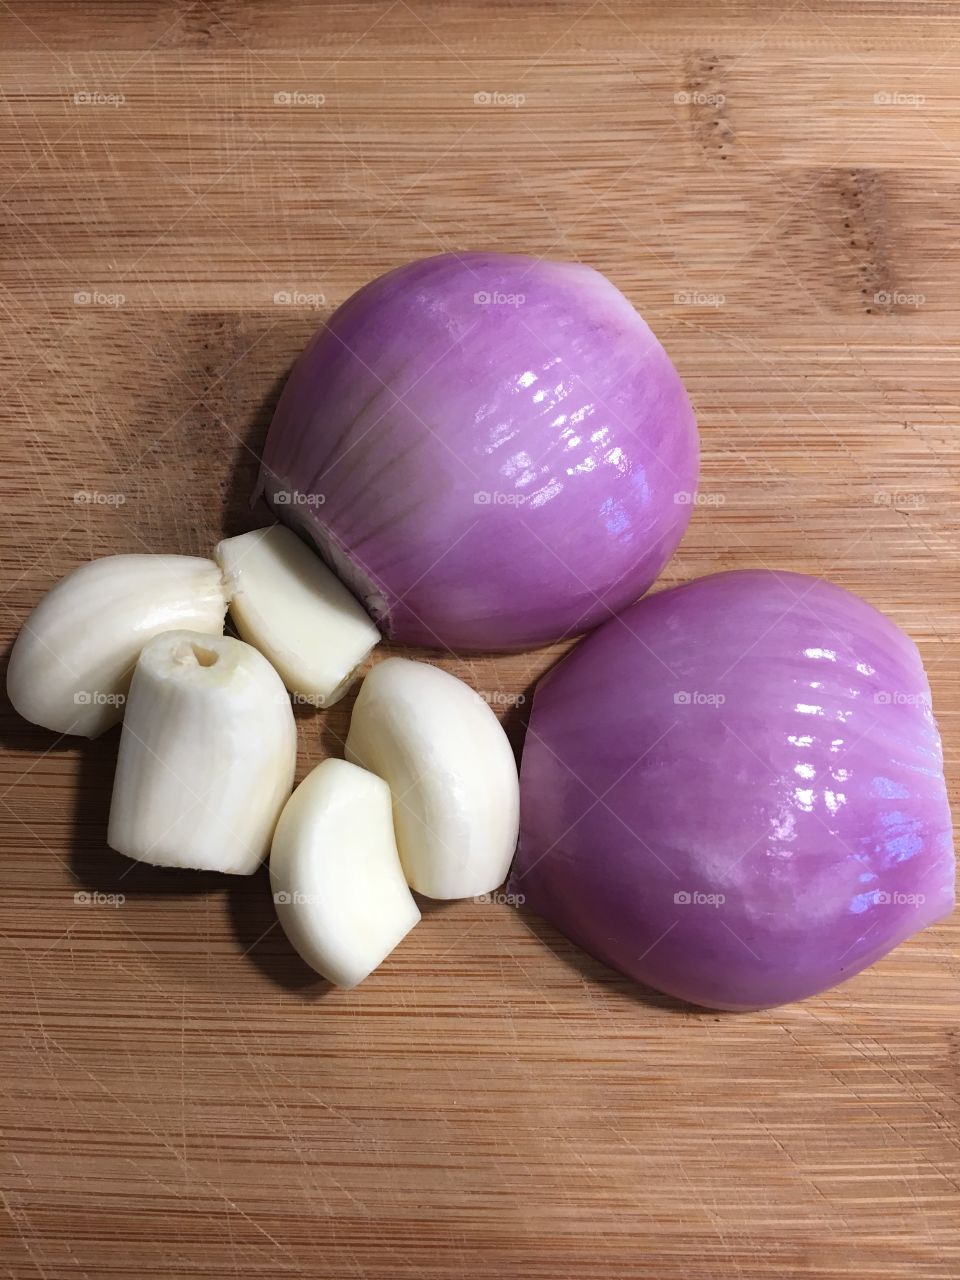 Raw garlic and shallot 